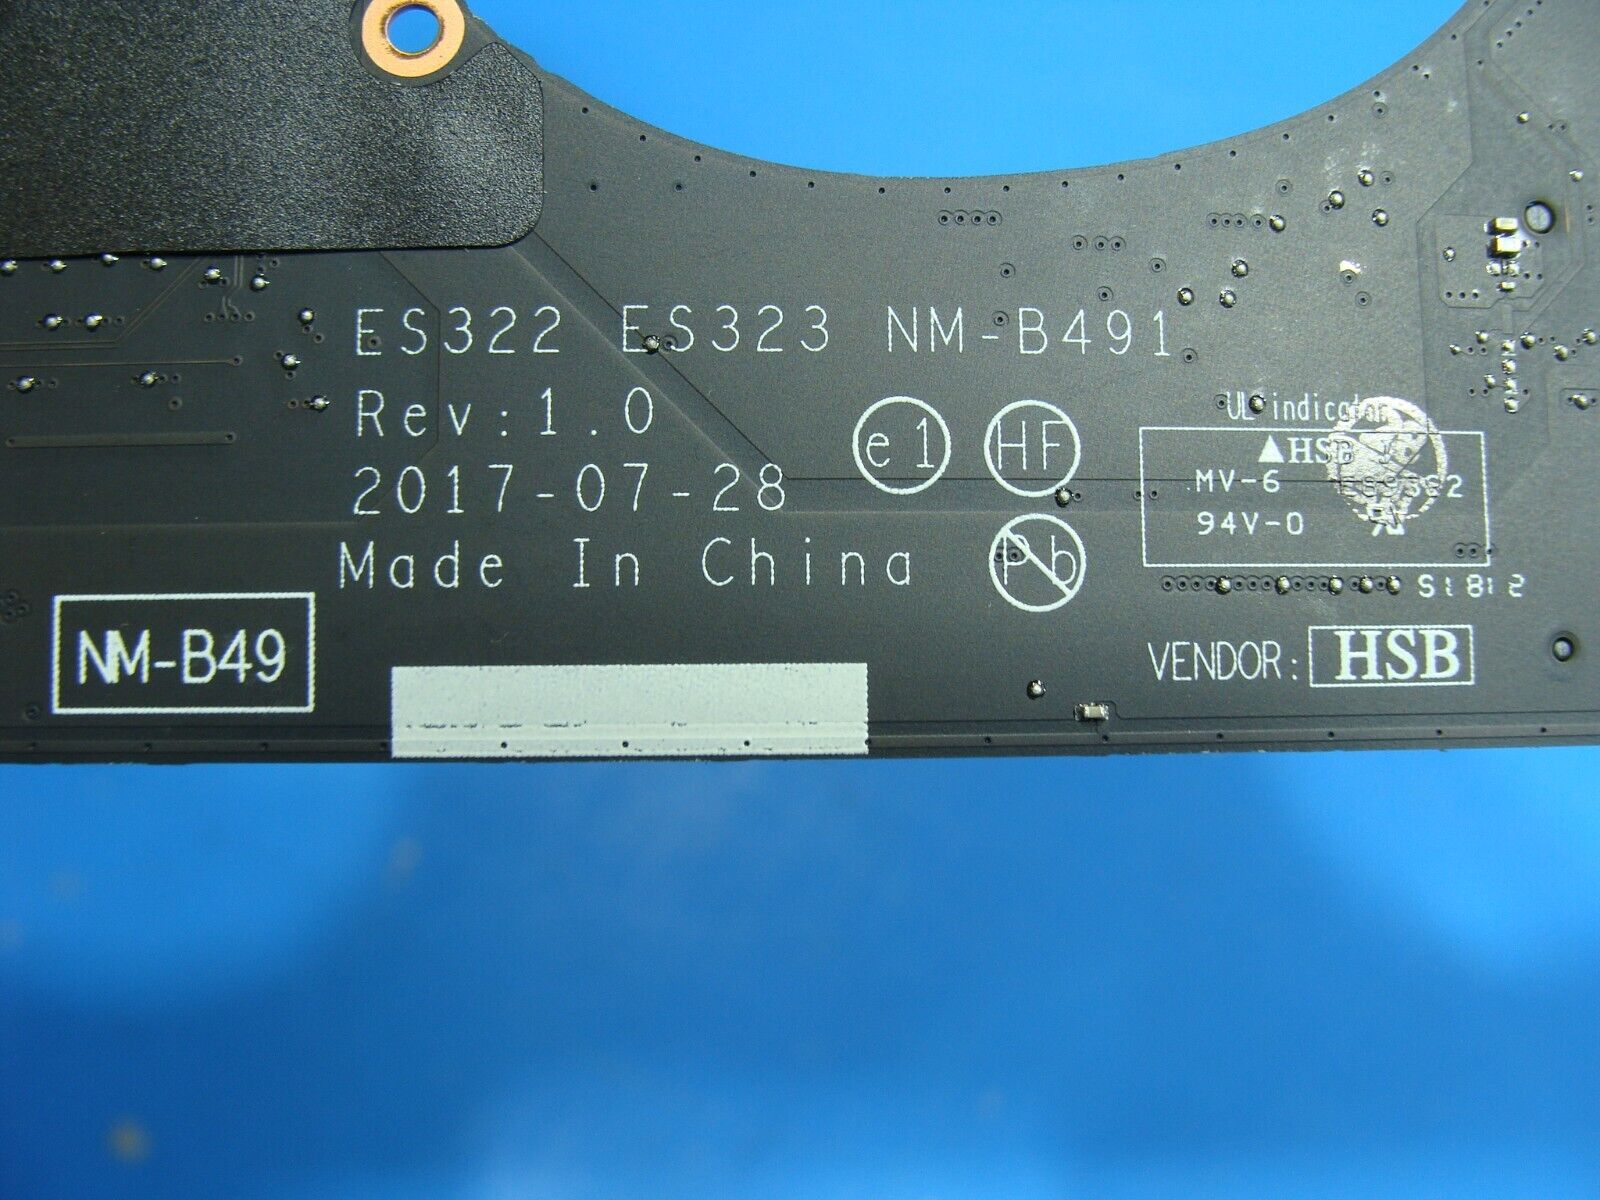 Lenovo Ideapad 720S-13IKB 13.3